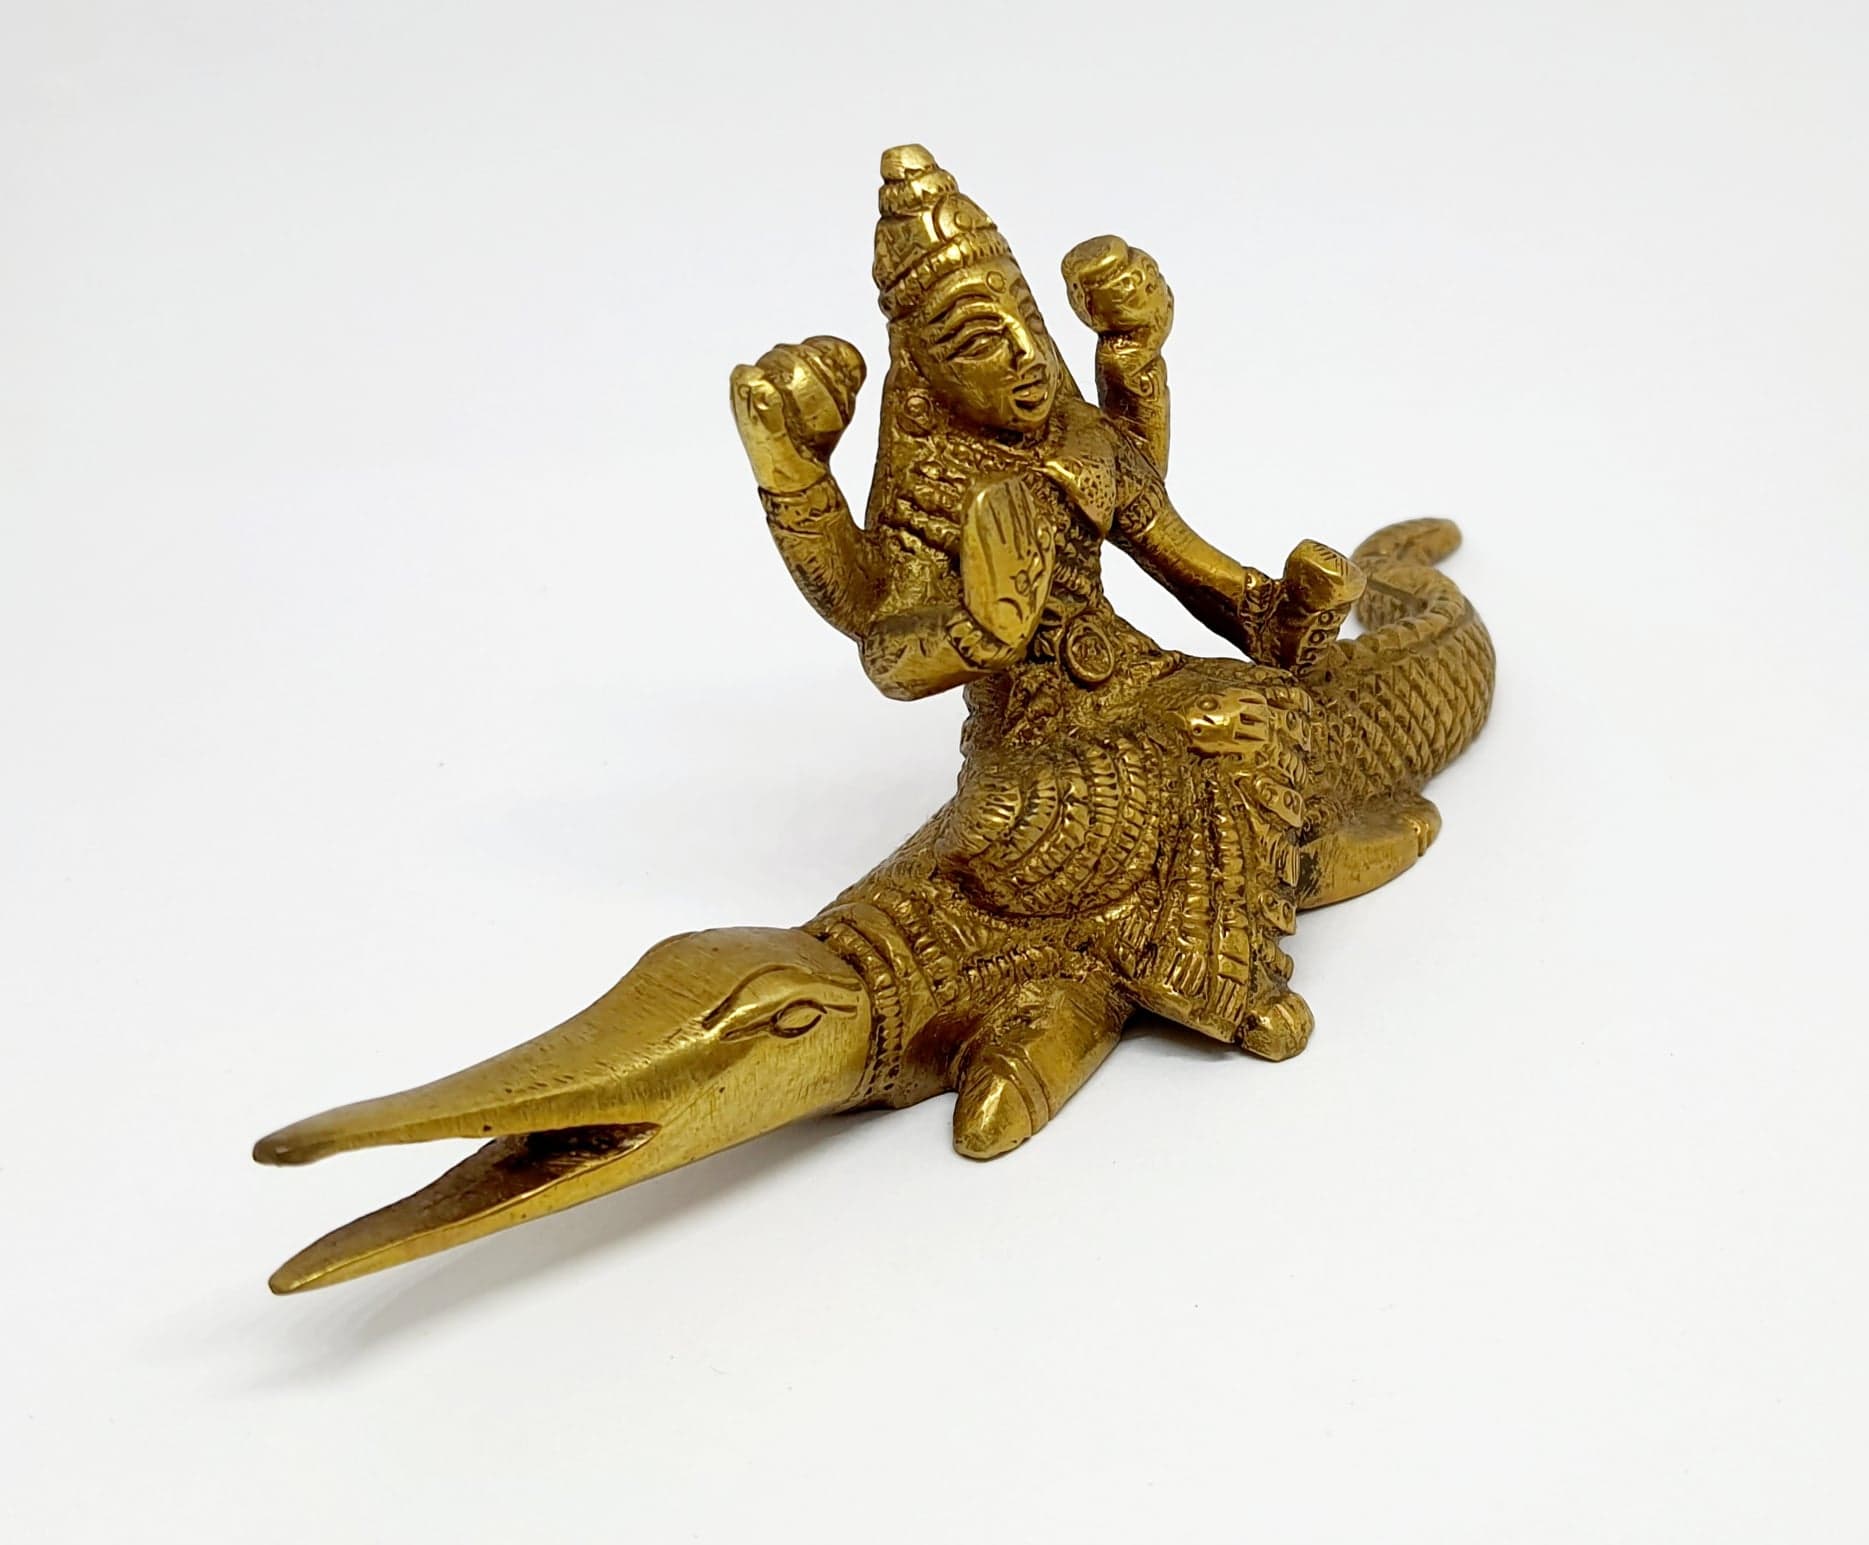 รูปภาพที่1 ของสินค้า : TP301 พระแม่คงคา เนื้อทองเหลืองอินเดีย 